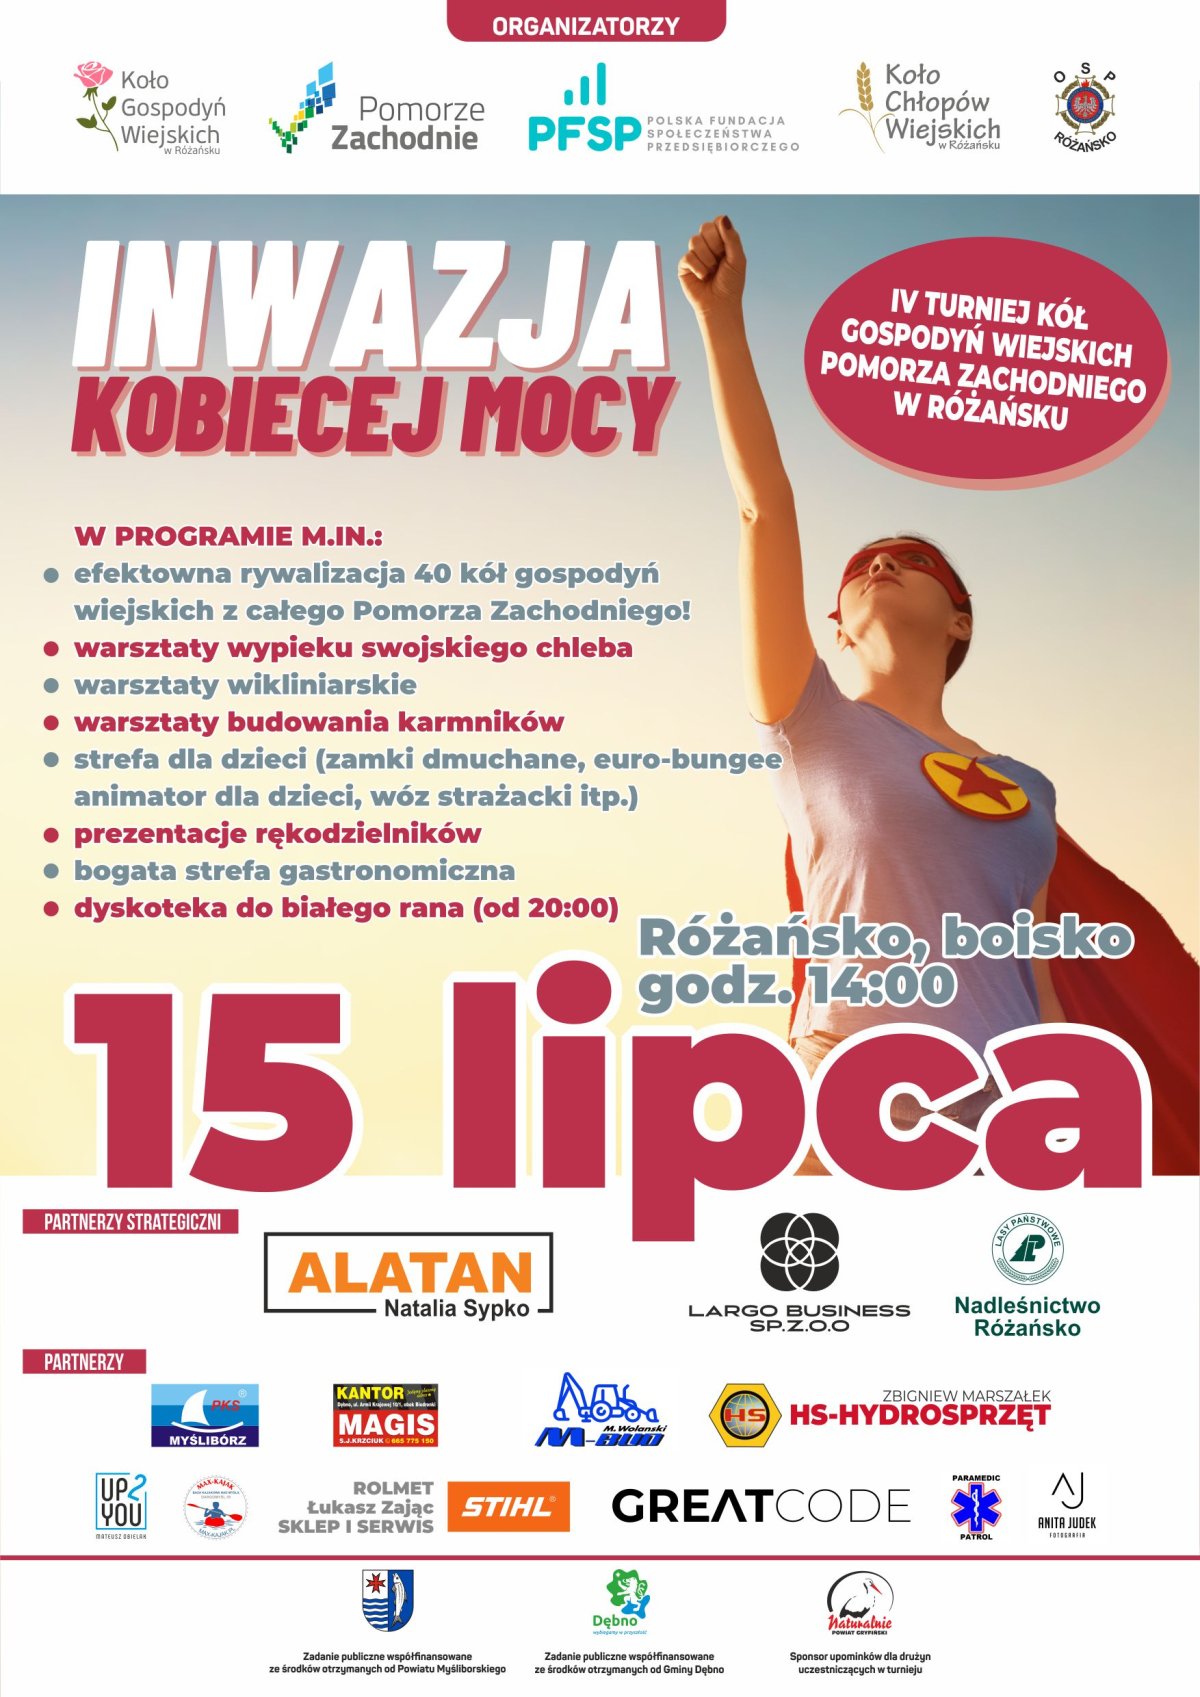 Plakat Inwazja Kobiecej Mocy z opisem programu oraz datą wydarzenia, na plakacie widoczna jest kobieta w czerwonej pelerynie z gwiazdą na piersi ukazana jako postać superbohatera